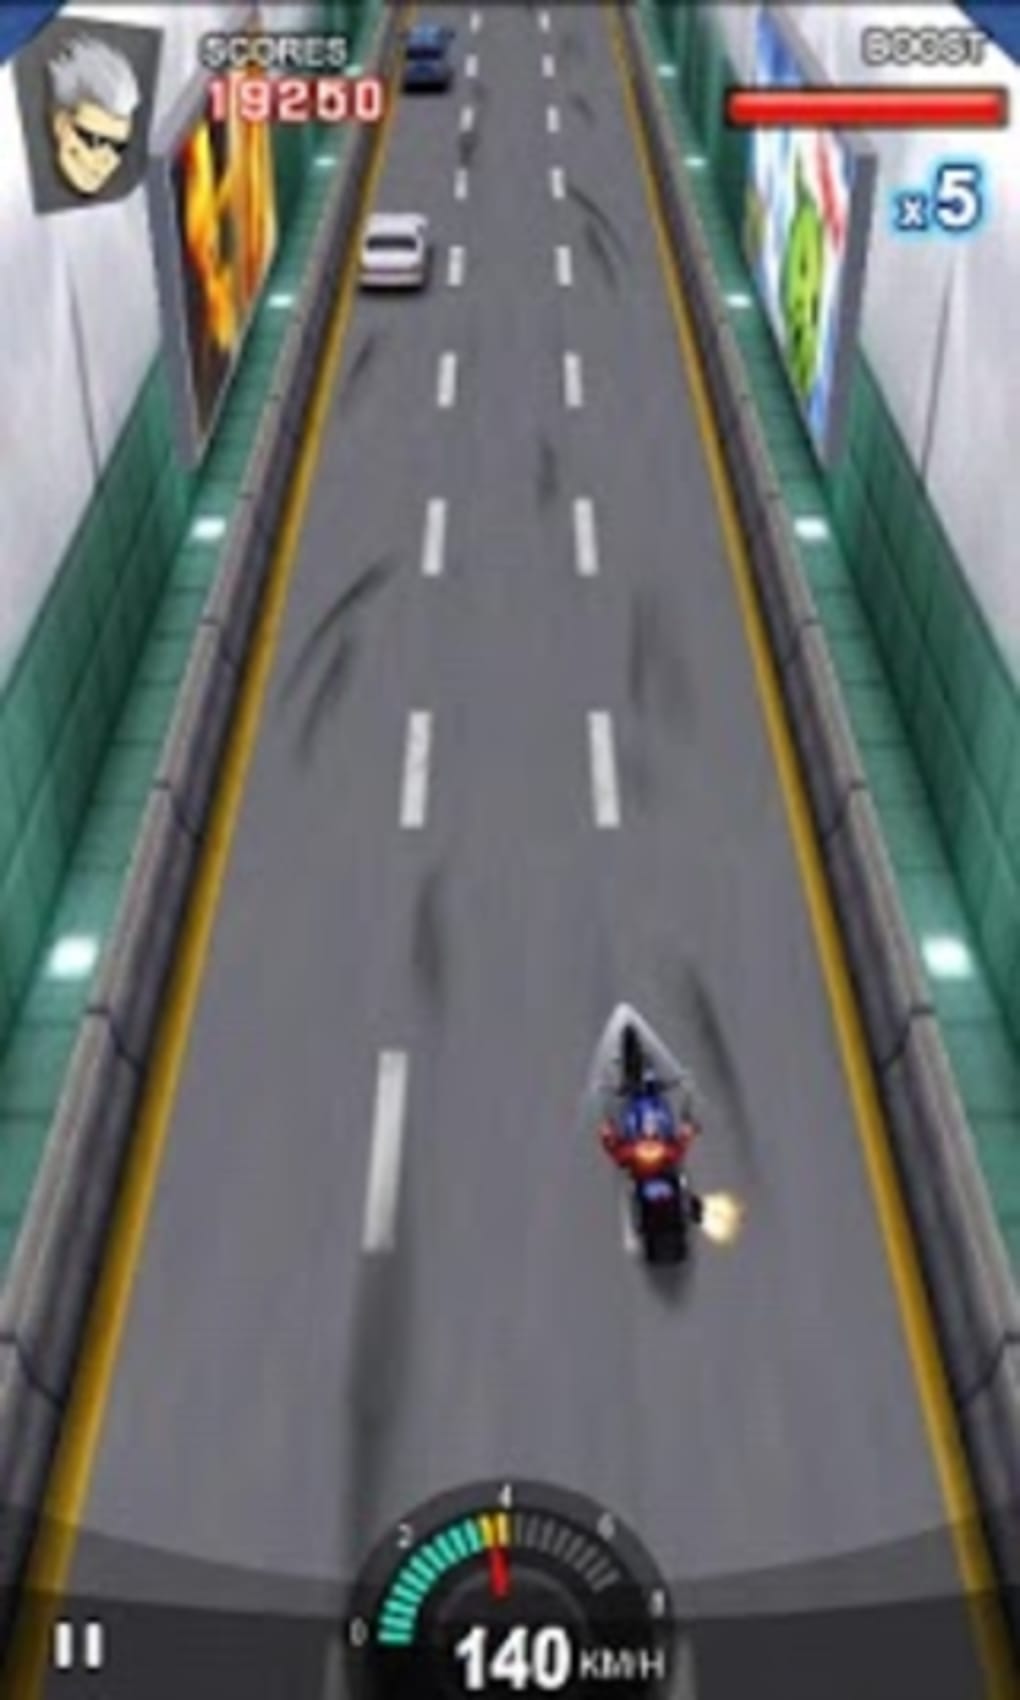 motorcycle wala game motorcycle